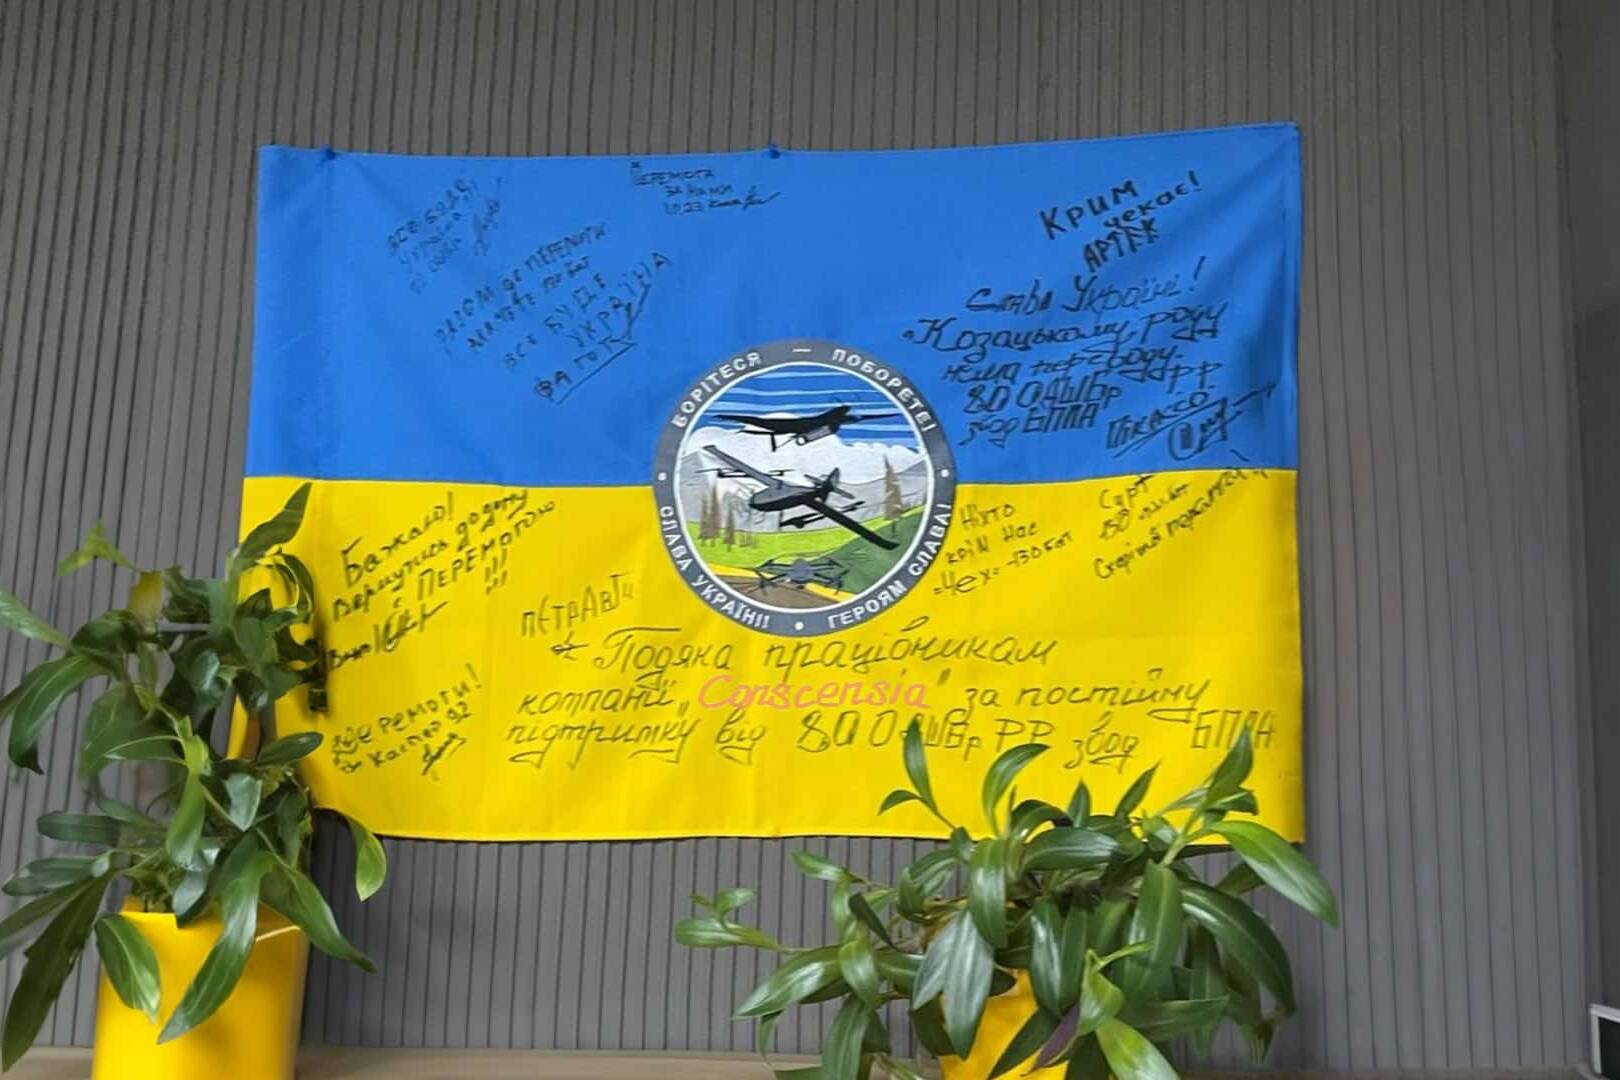 Et blåt og gult ukrainsk flag med signaturer og en besked på ukrainsk, der udtrykker taknemmelighed til Conscensias ansatte for deres støtte, hængende på en væg.